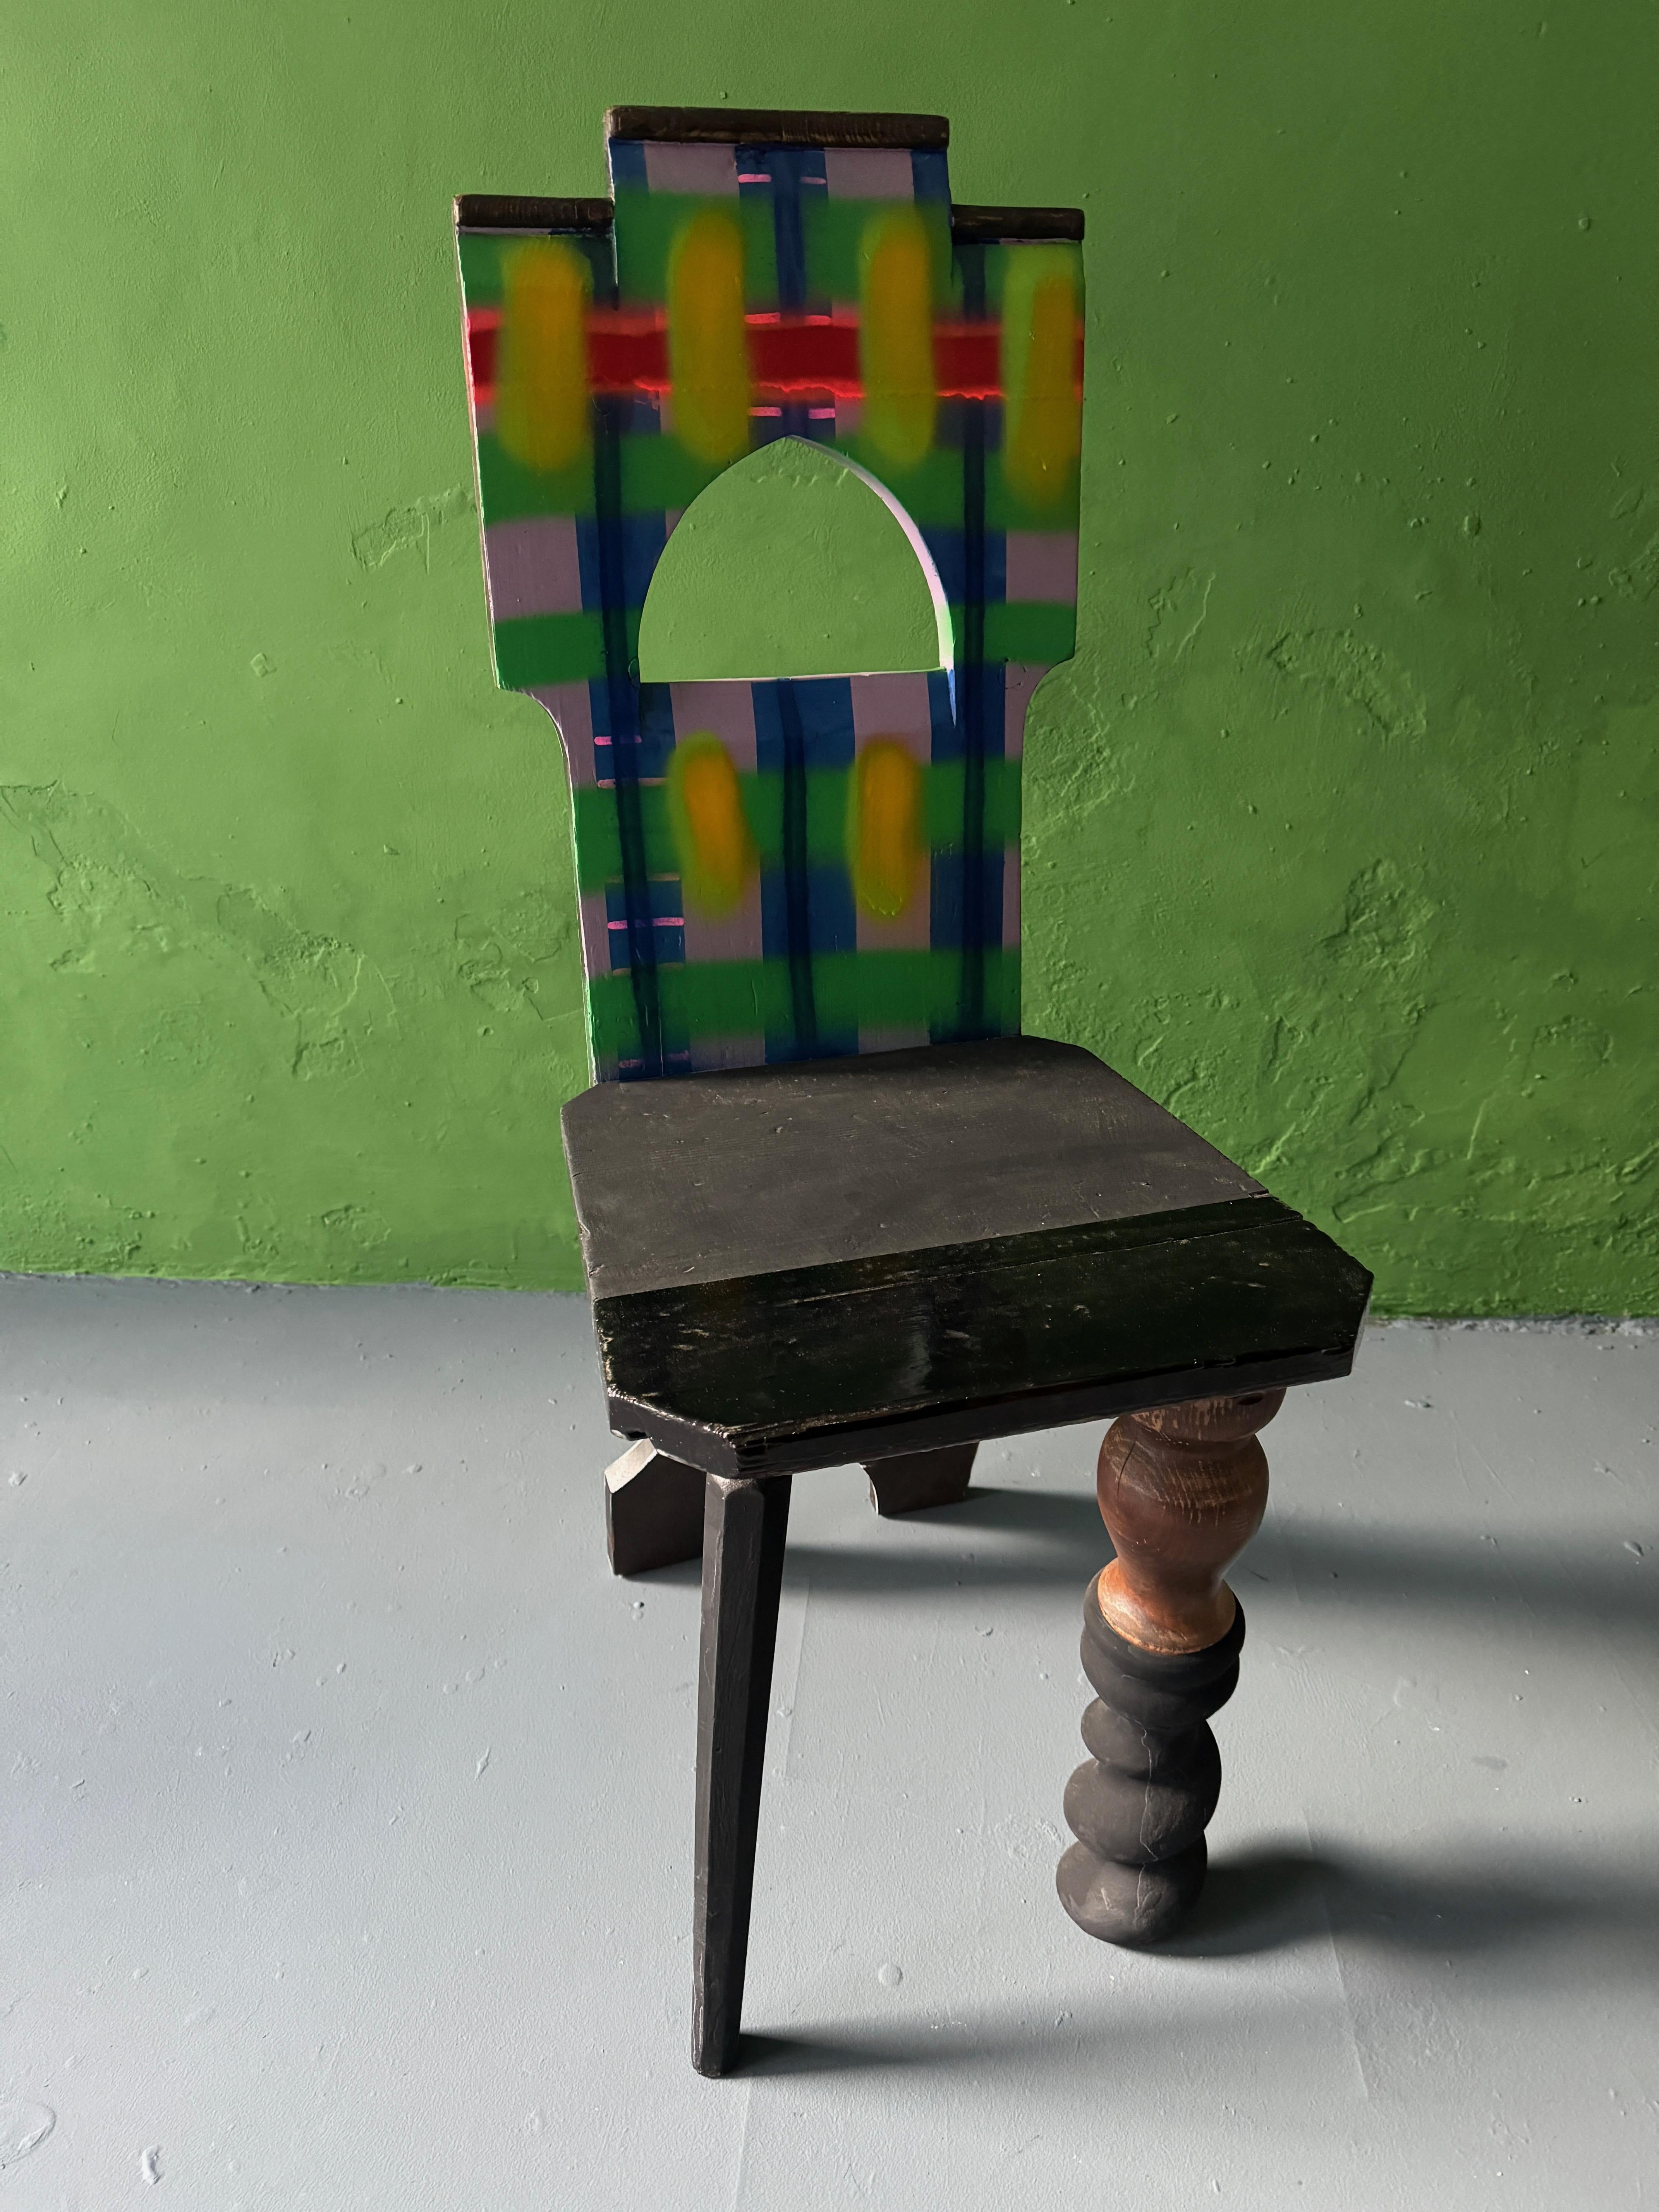 Stuhl „Oh Romeo, wo ist Juliet ?“, zeitgenössisch, von Markus Friedrich Staab (Art nouveau)